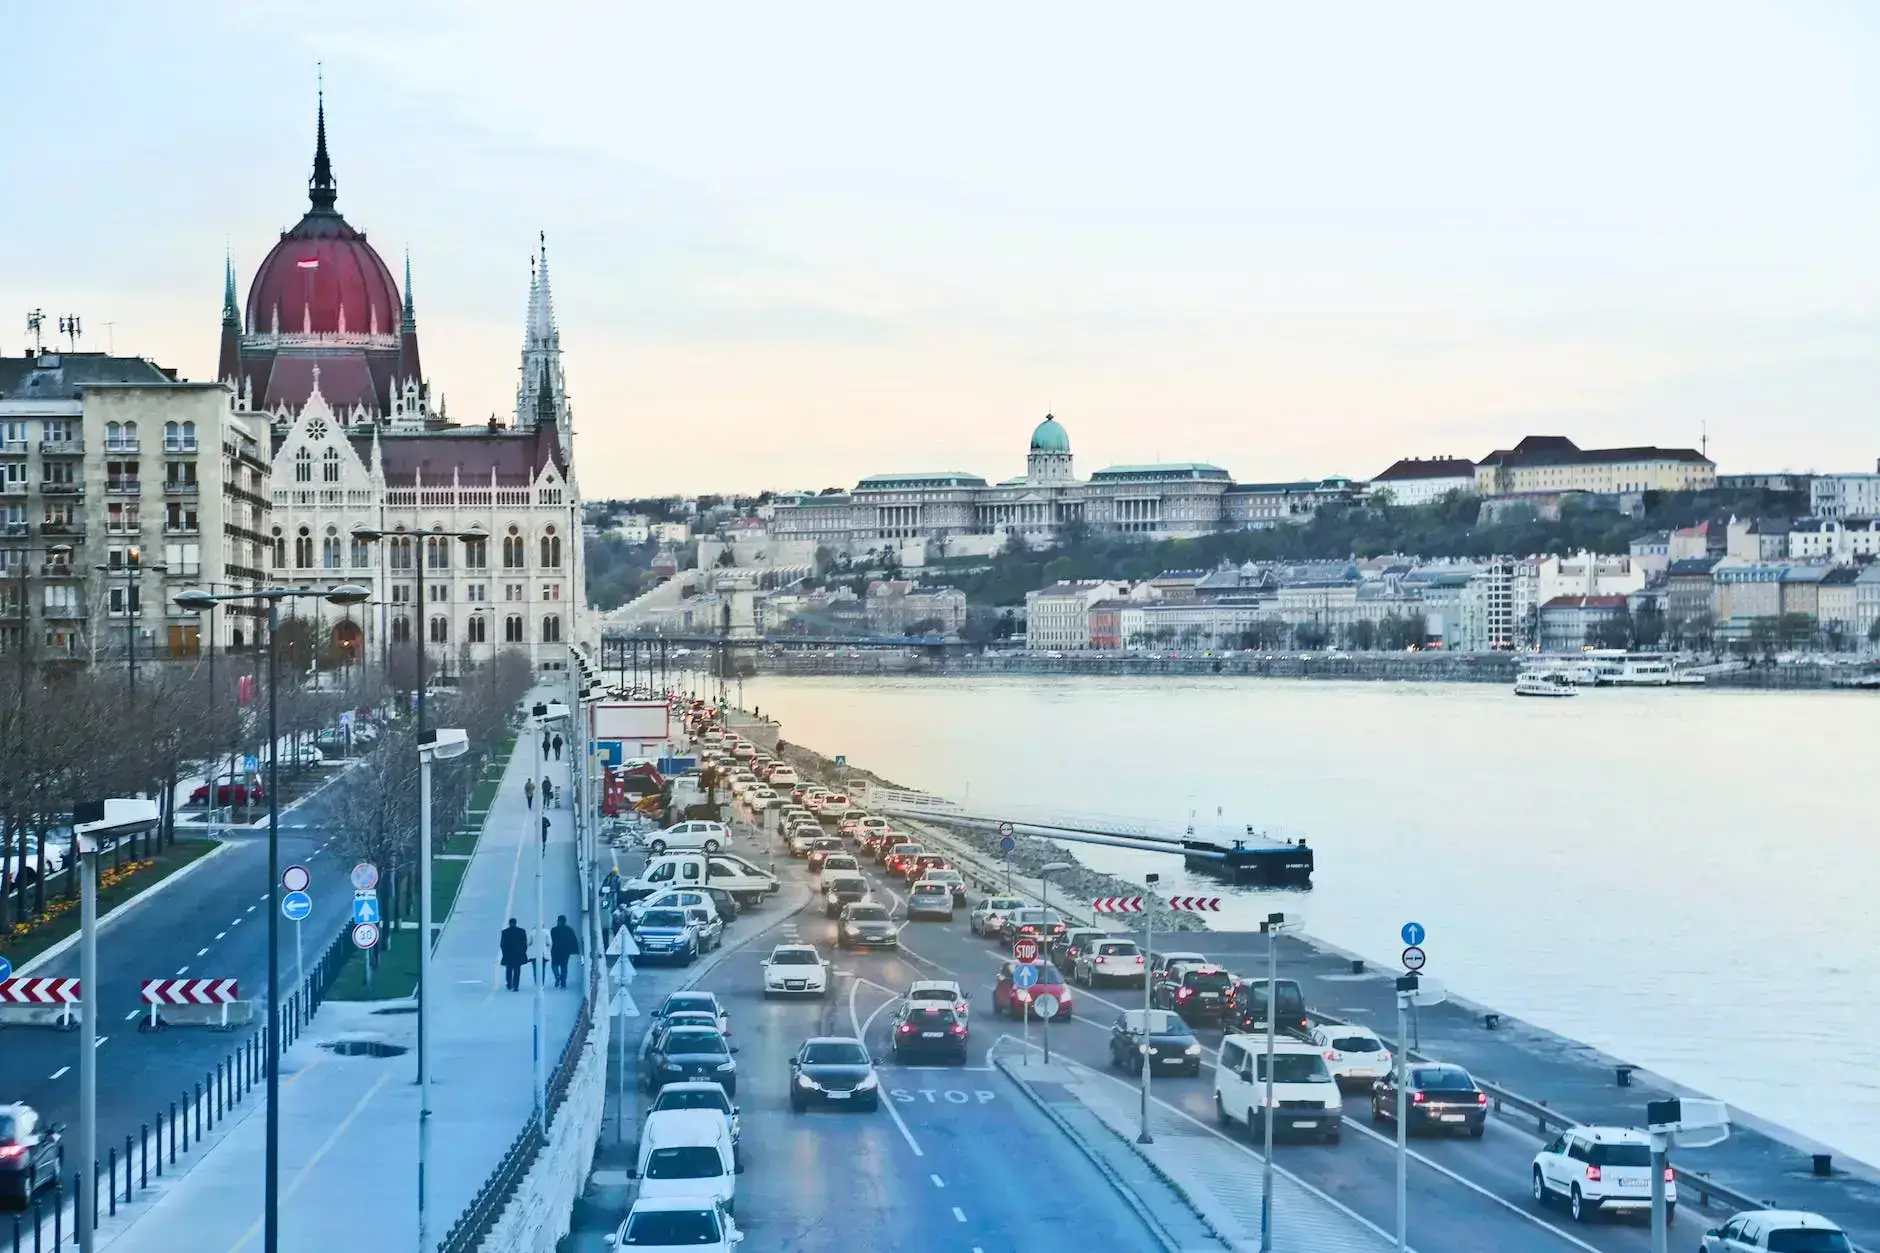 Macar vi̇nyet - Macaristan'da karayolu üzerinde seyahat seçenekleri